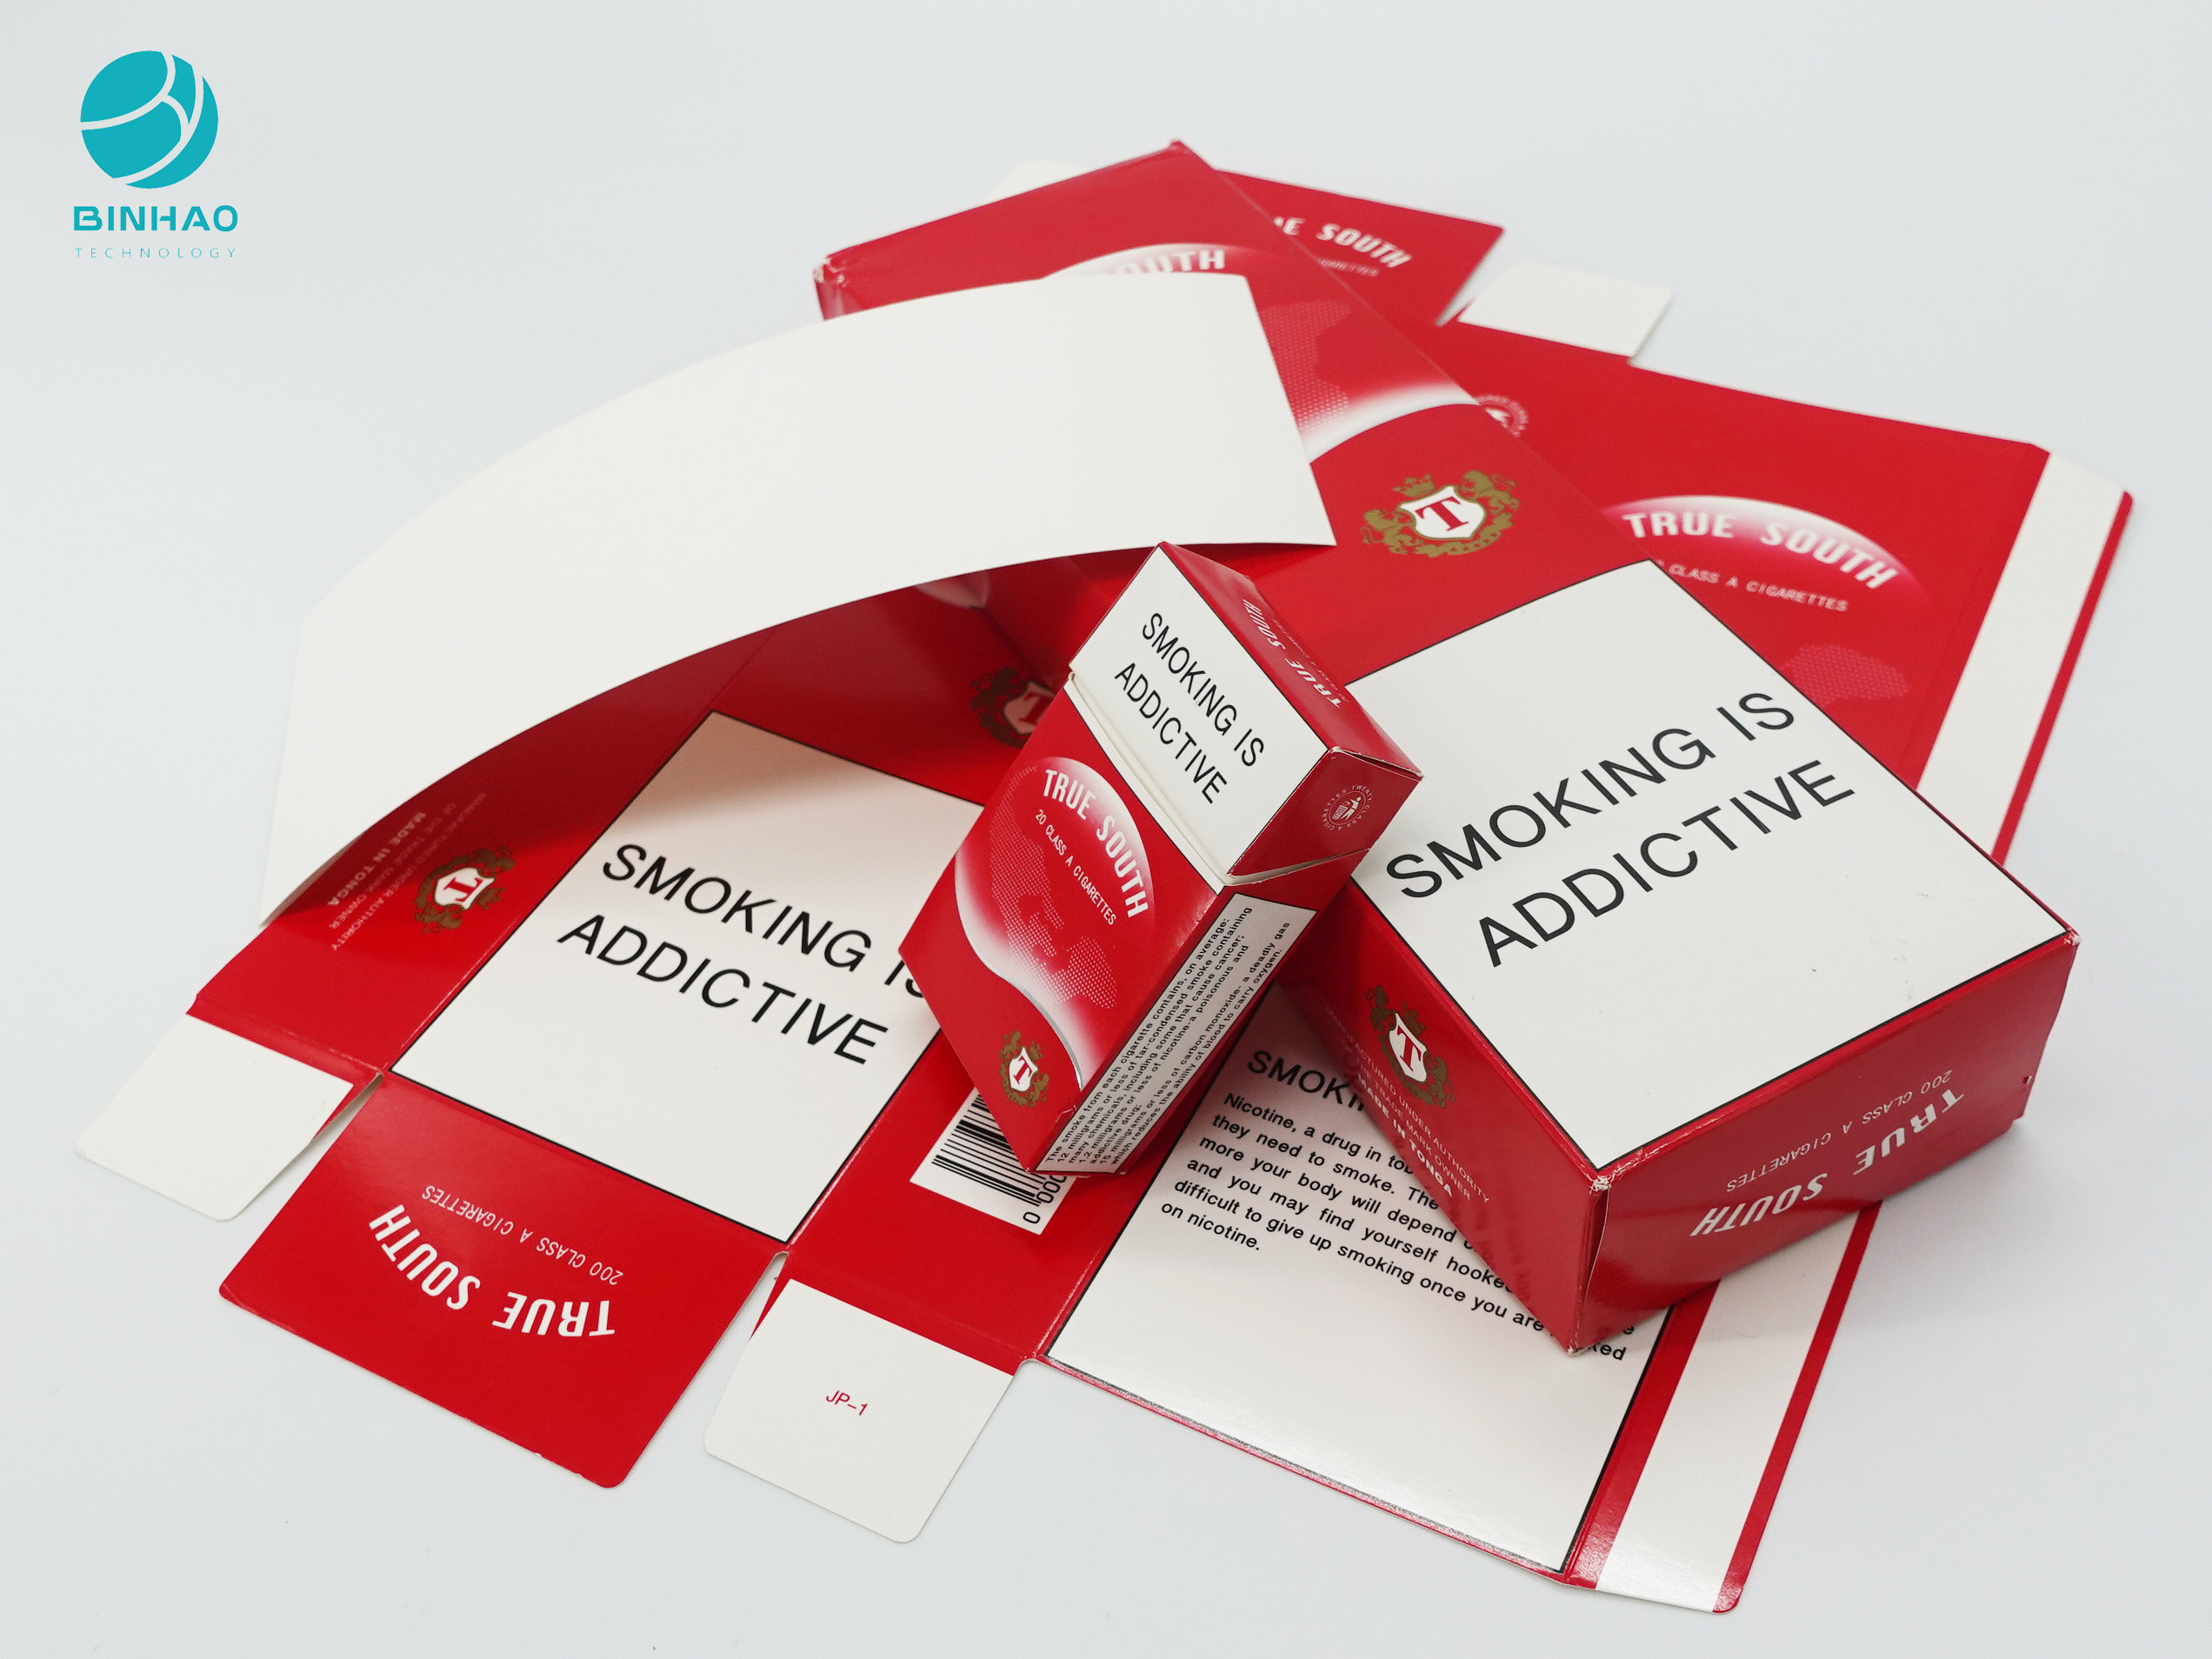 स्मोक्स पैकेज कस्टमाइज्ड प्रिंटिंग और हॉट स्टैम्पिंग के साथ सिगरेट केस पैक करता है